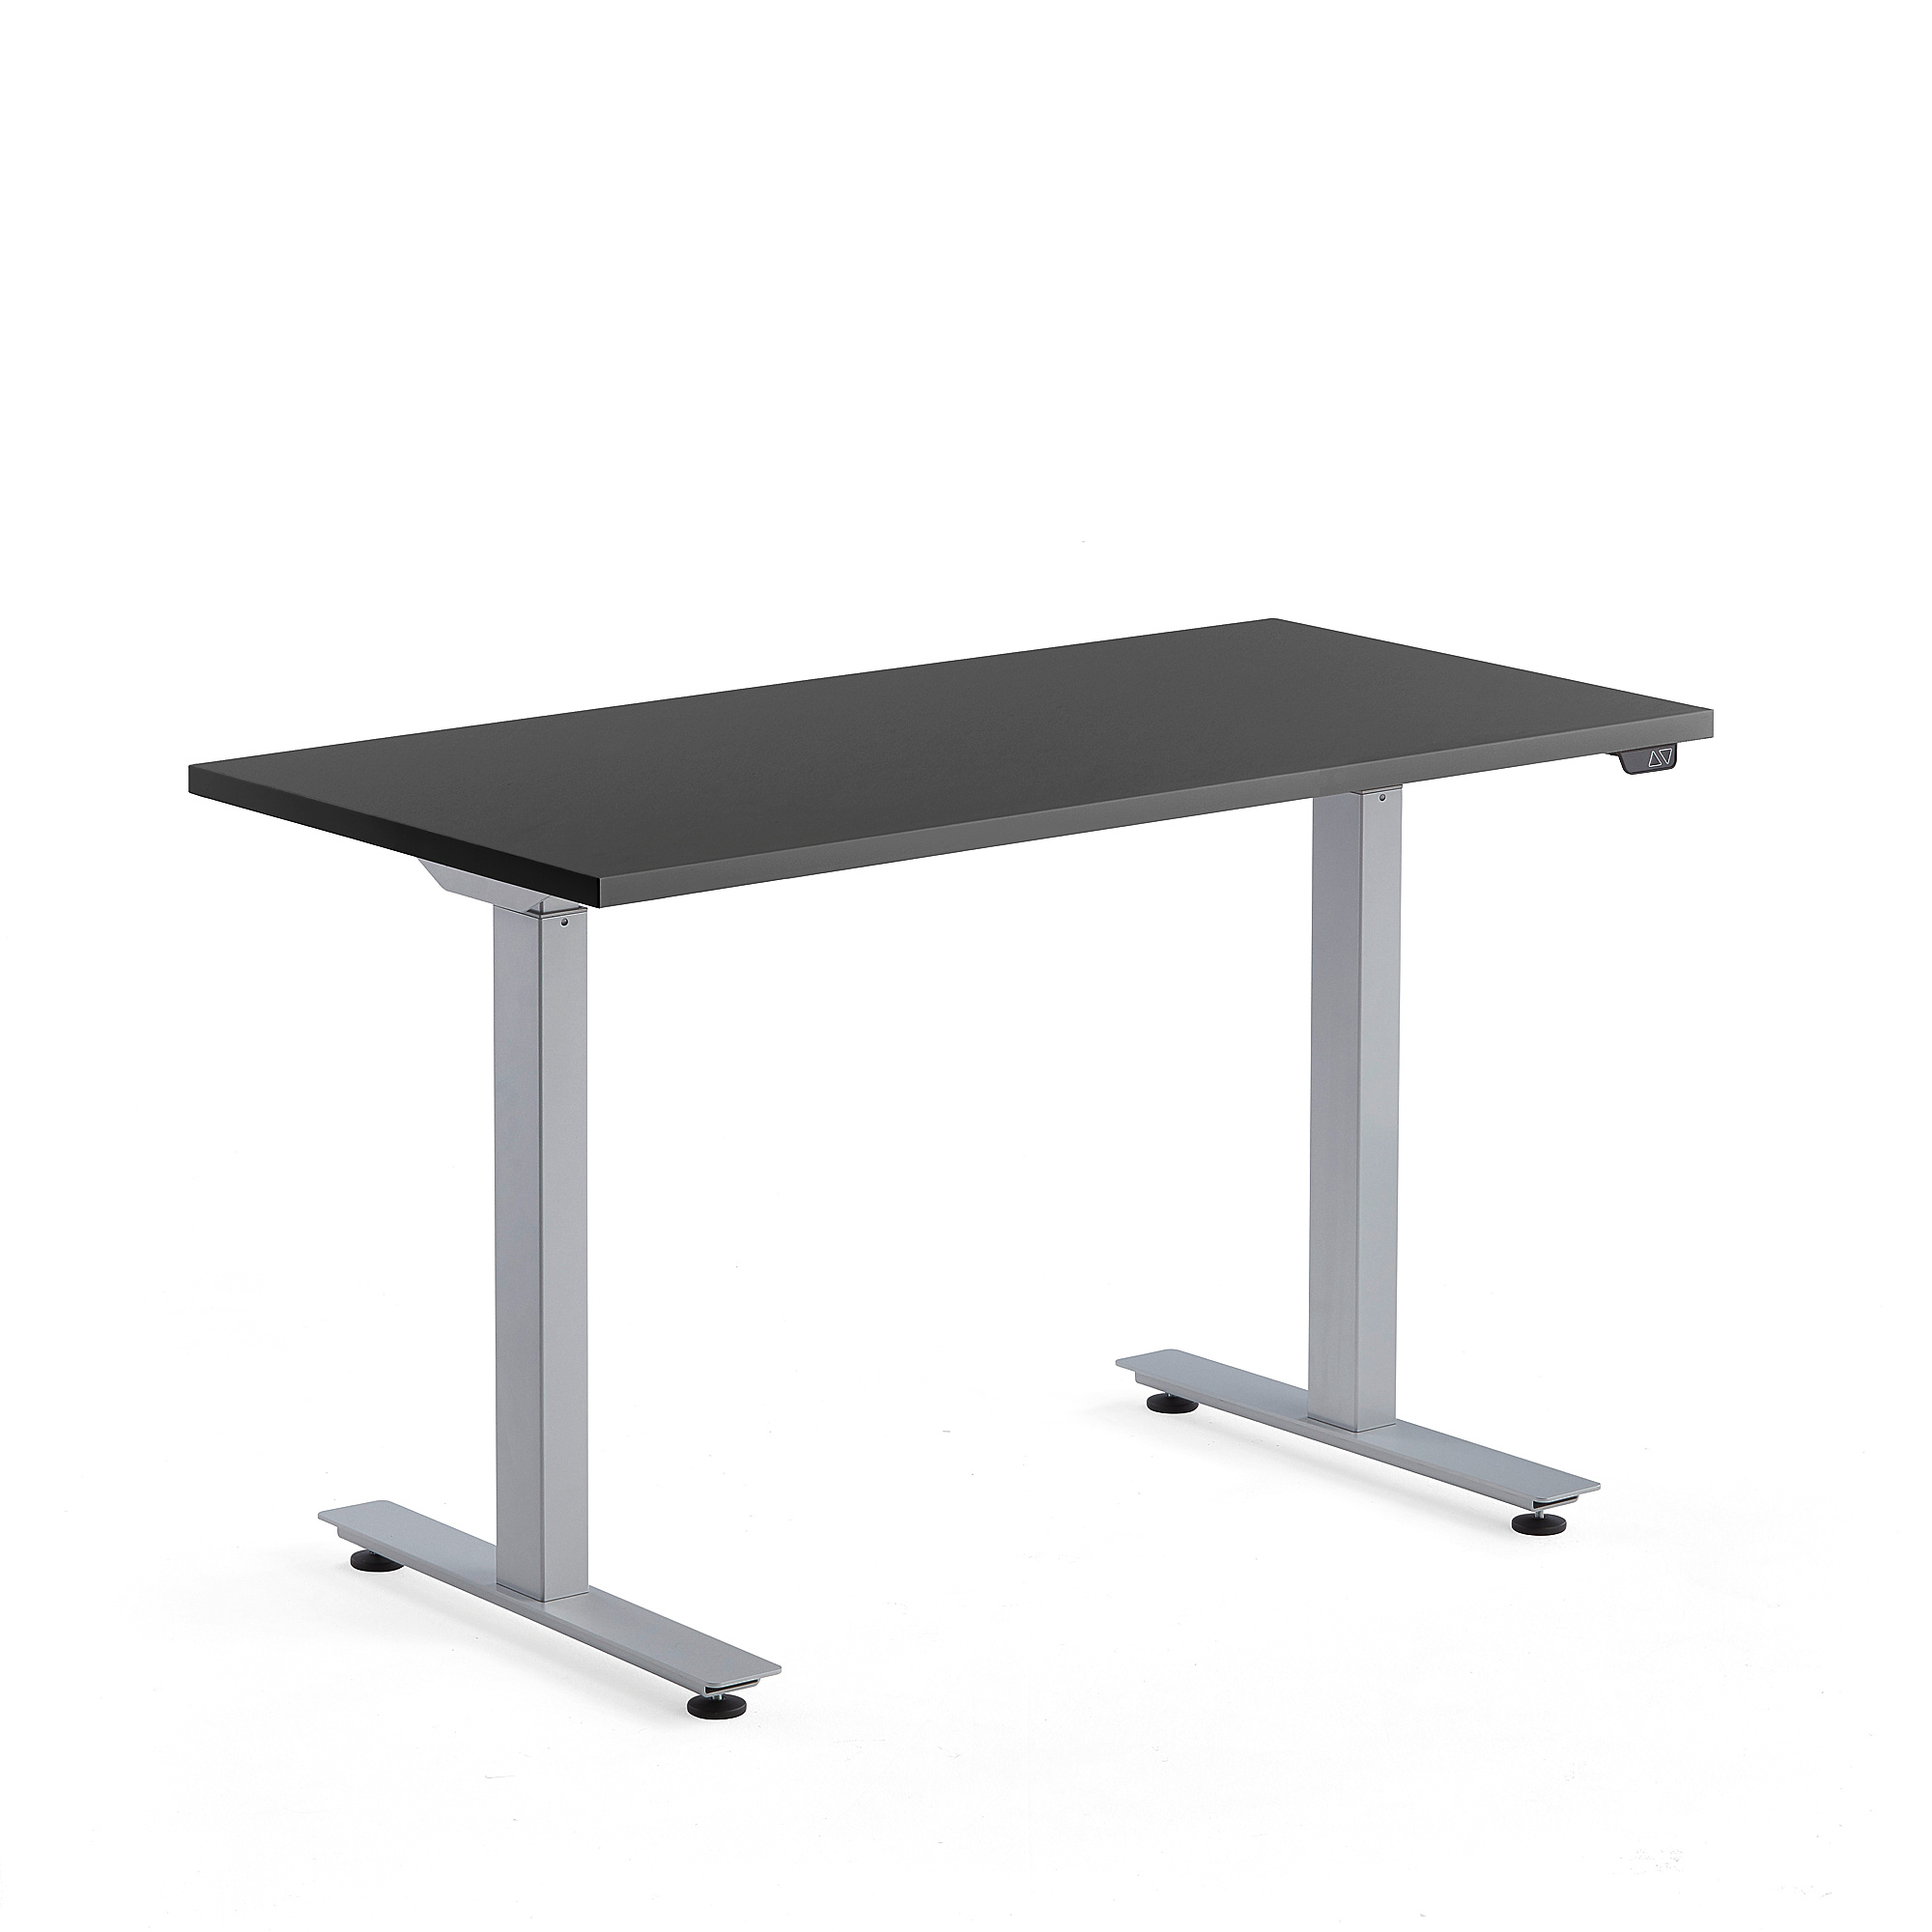 Výškově nastavitelný stůl MODULUS, 1200x600 mm, stříbrný rám, černá